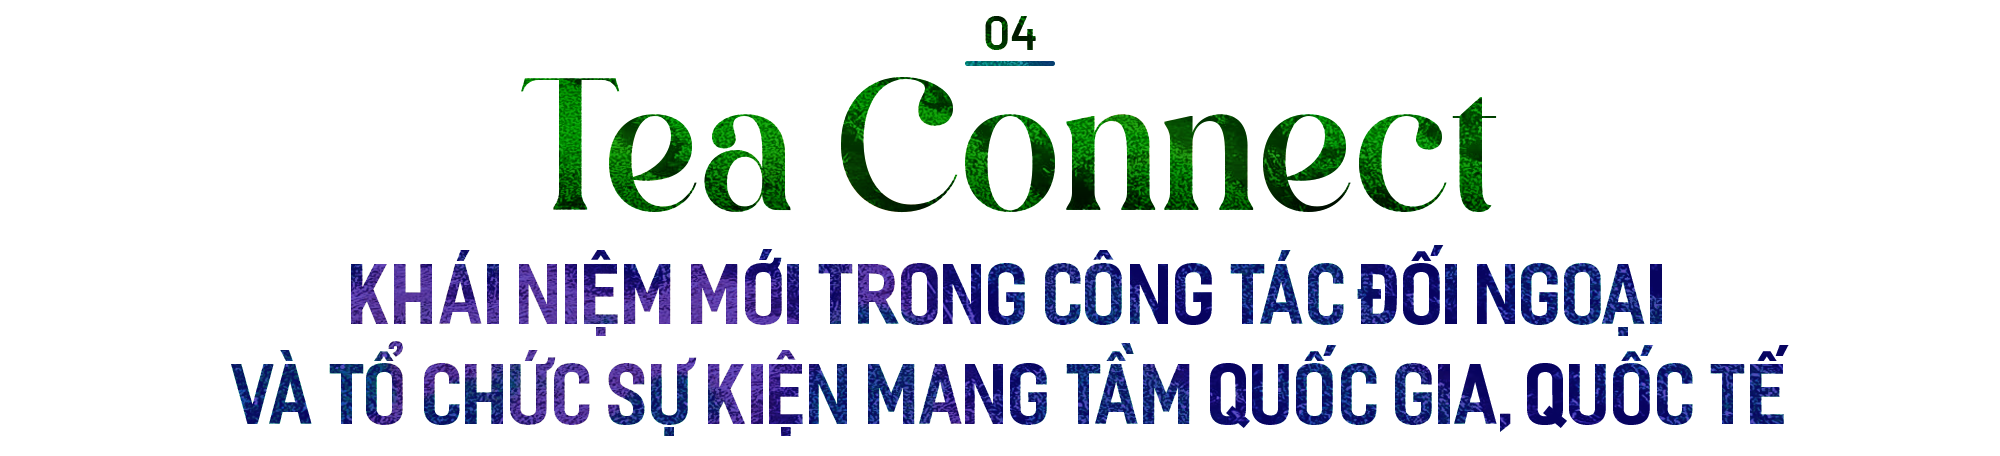 Tea Connect – một khái niệm mới trong công tác đối ngoại, đưa văn hóa trà Việt ra khắp thế giới - Ảnh 11.